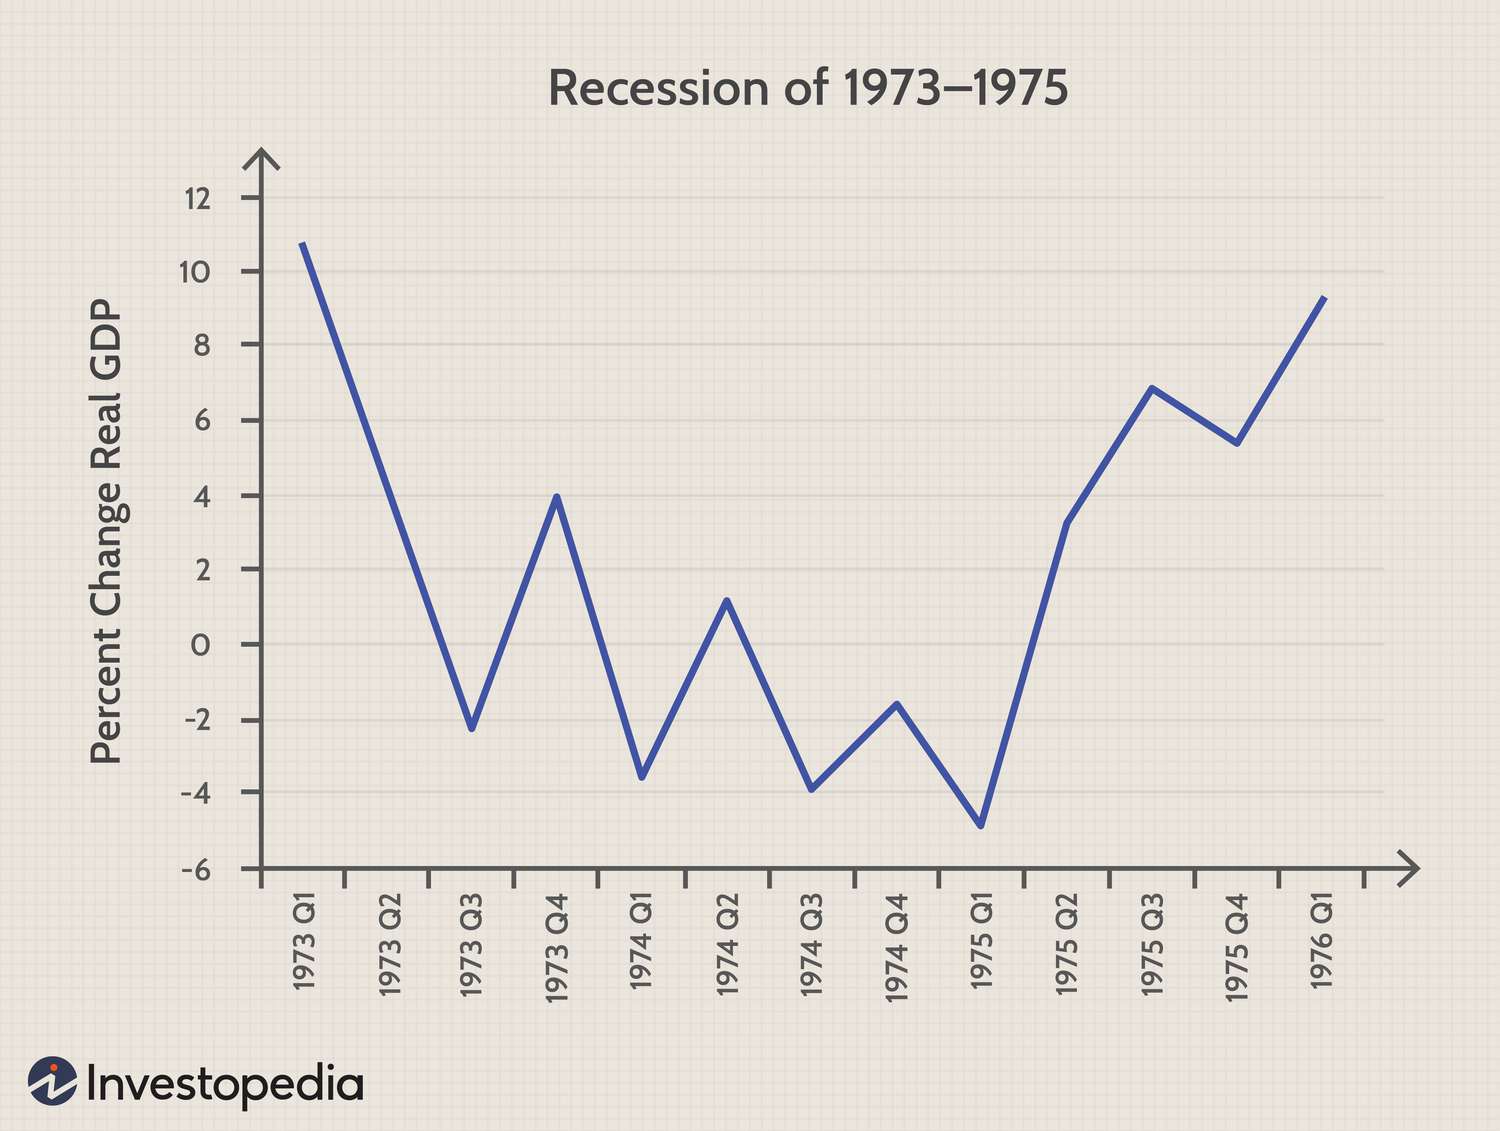 Gráfico de cambio porcentual en el PIB real durante la recesión de 1973-1975